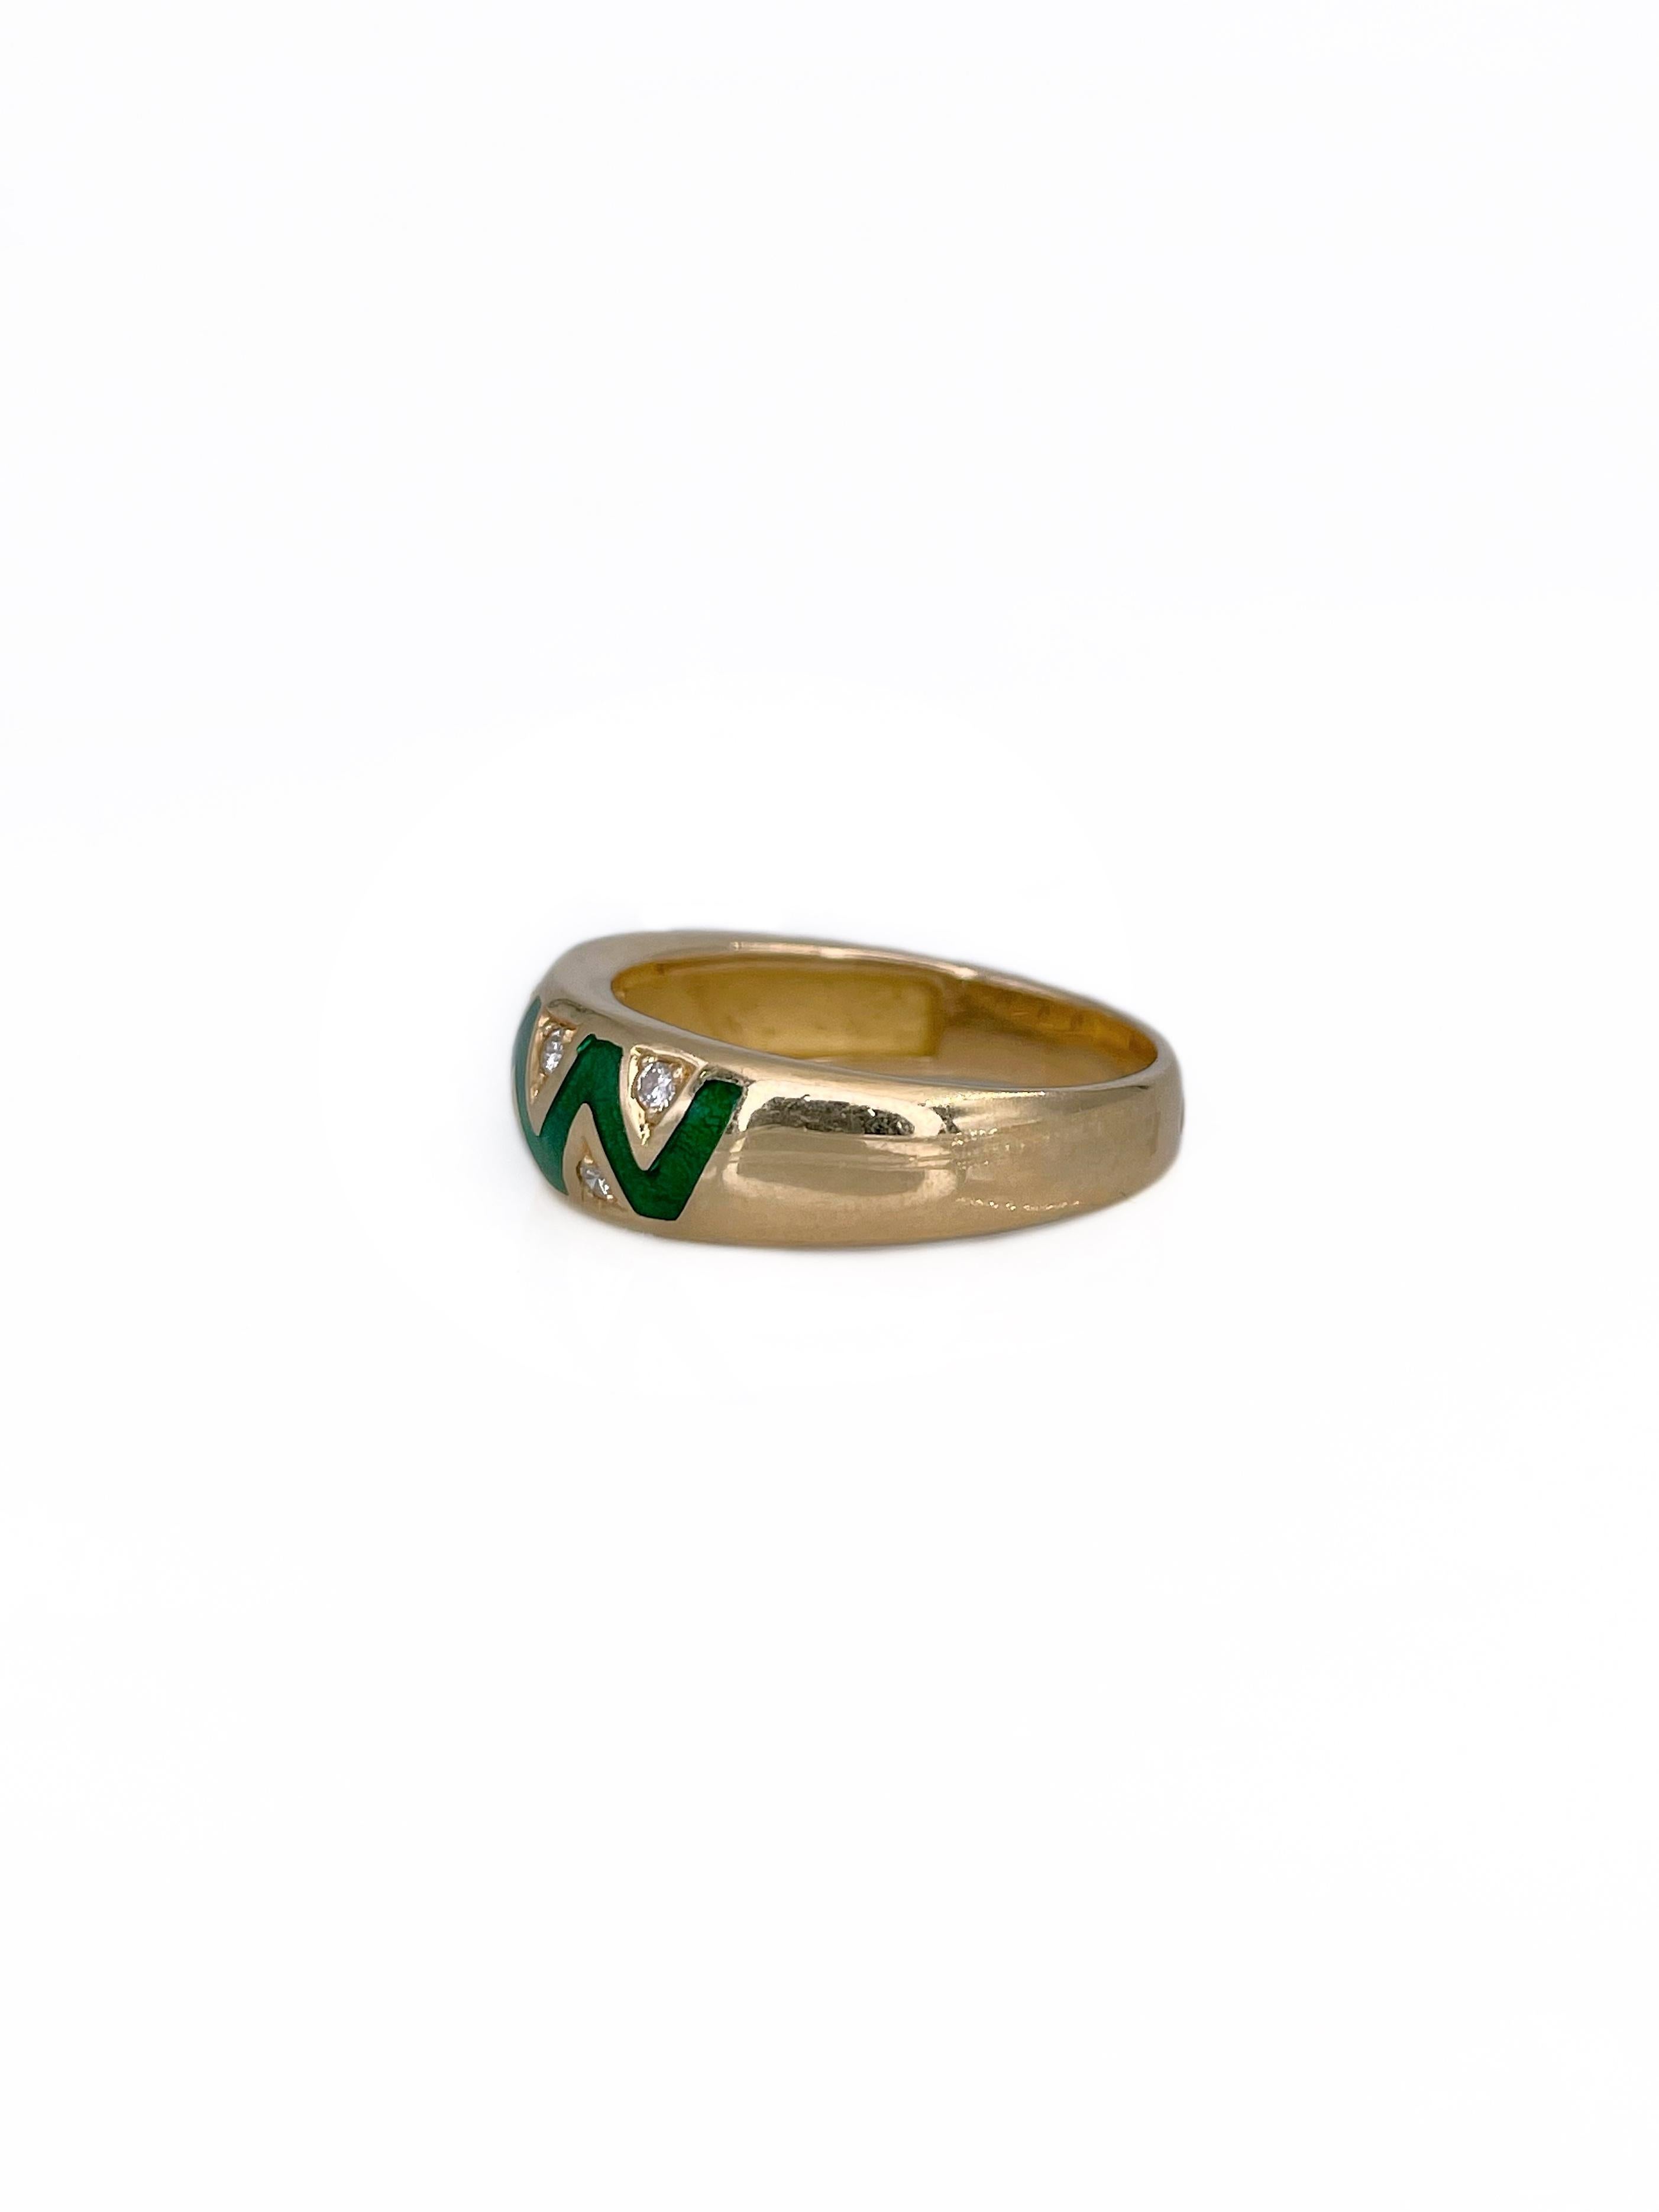 Modern Vintage 18 Karat Yellow Gold 0.12 Carat Diamond Green Enamel Band Ring For Sale